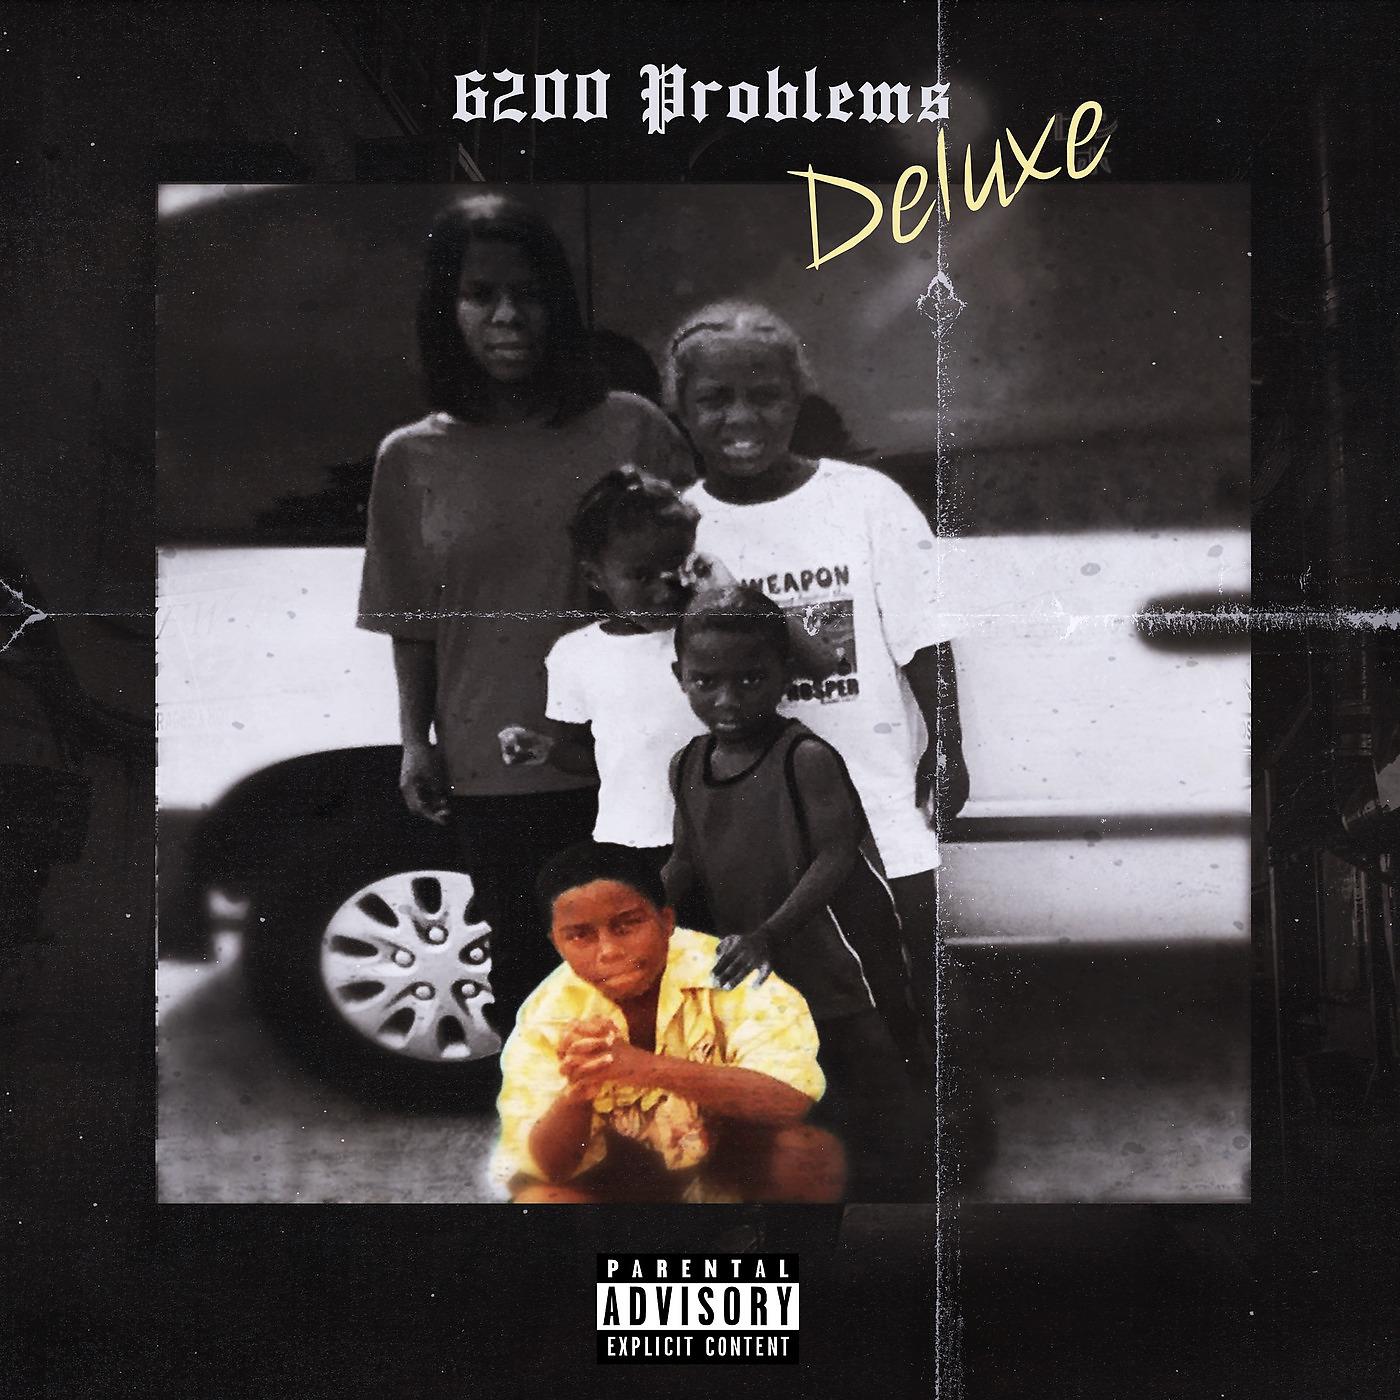 Постер альбома 6200 Problems (Deluxe)